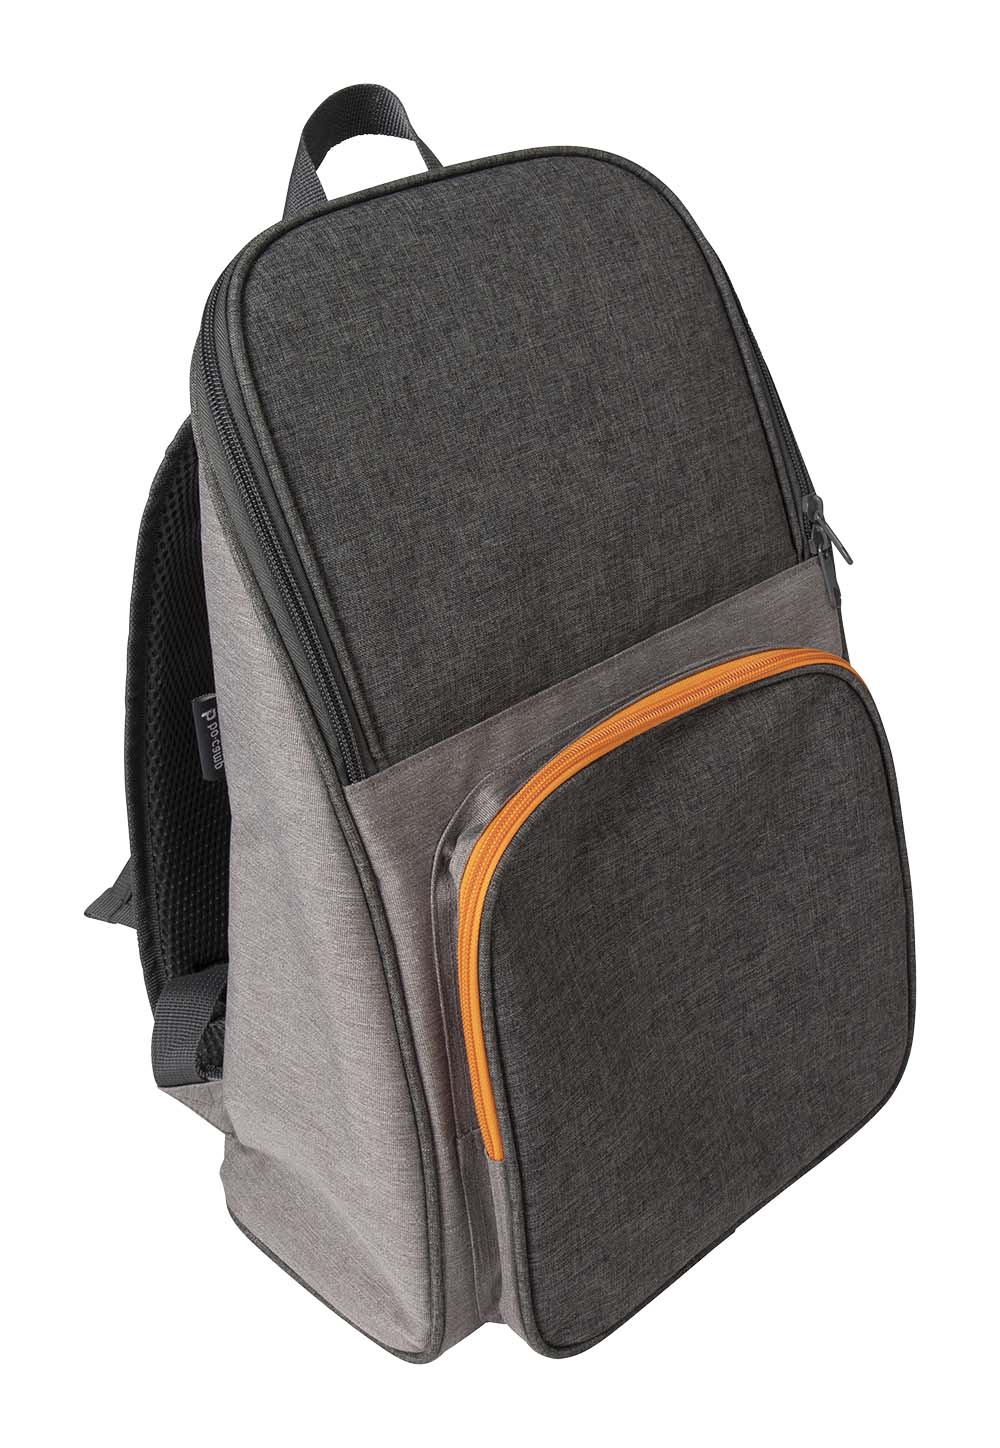 Bo-Camp - Cooler backpack - Grey - 10 Liters